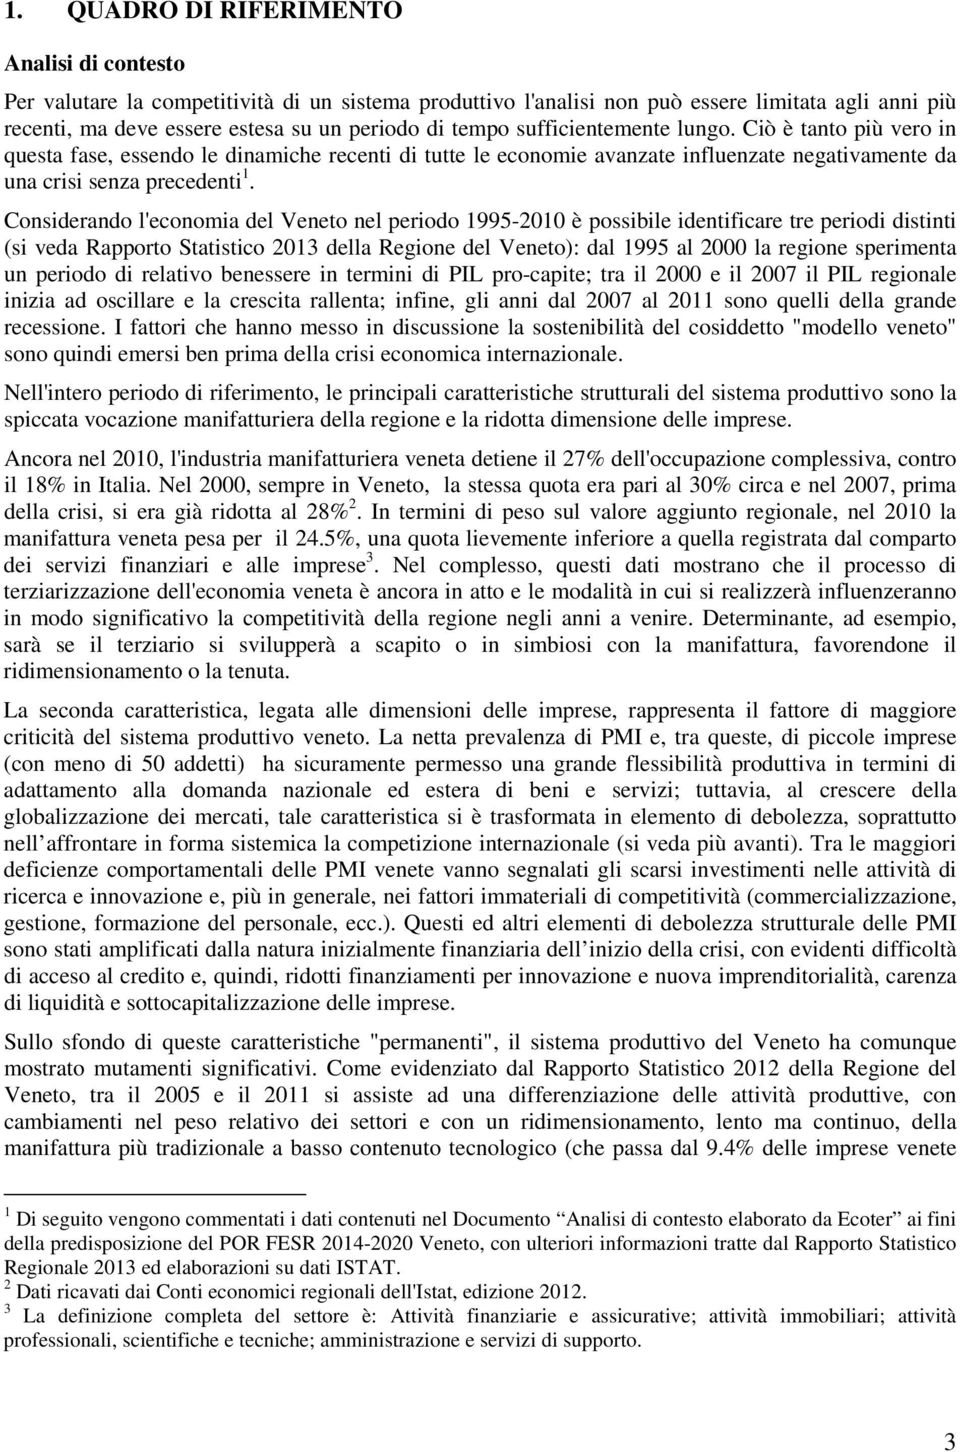 Considerando l'economia del Veneto nel periodo 1995-2010 è possibile identificare tre periodi distinti (si veda Rapporto Statistico 2013 della Regione del Veneto): dal 1995 al 2000 la regione